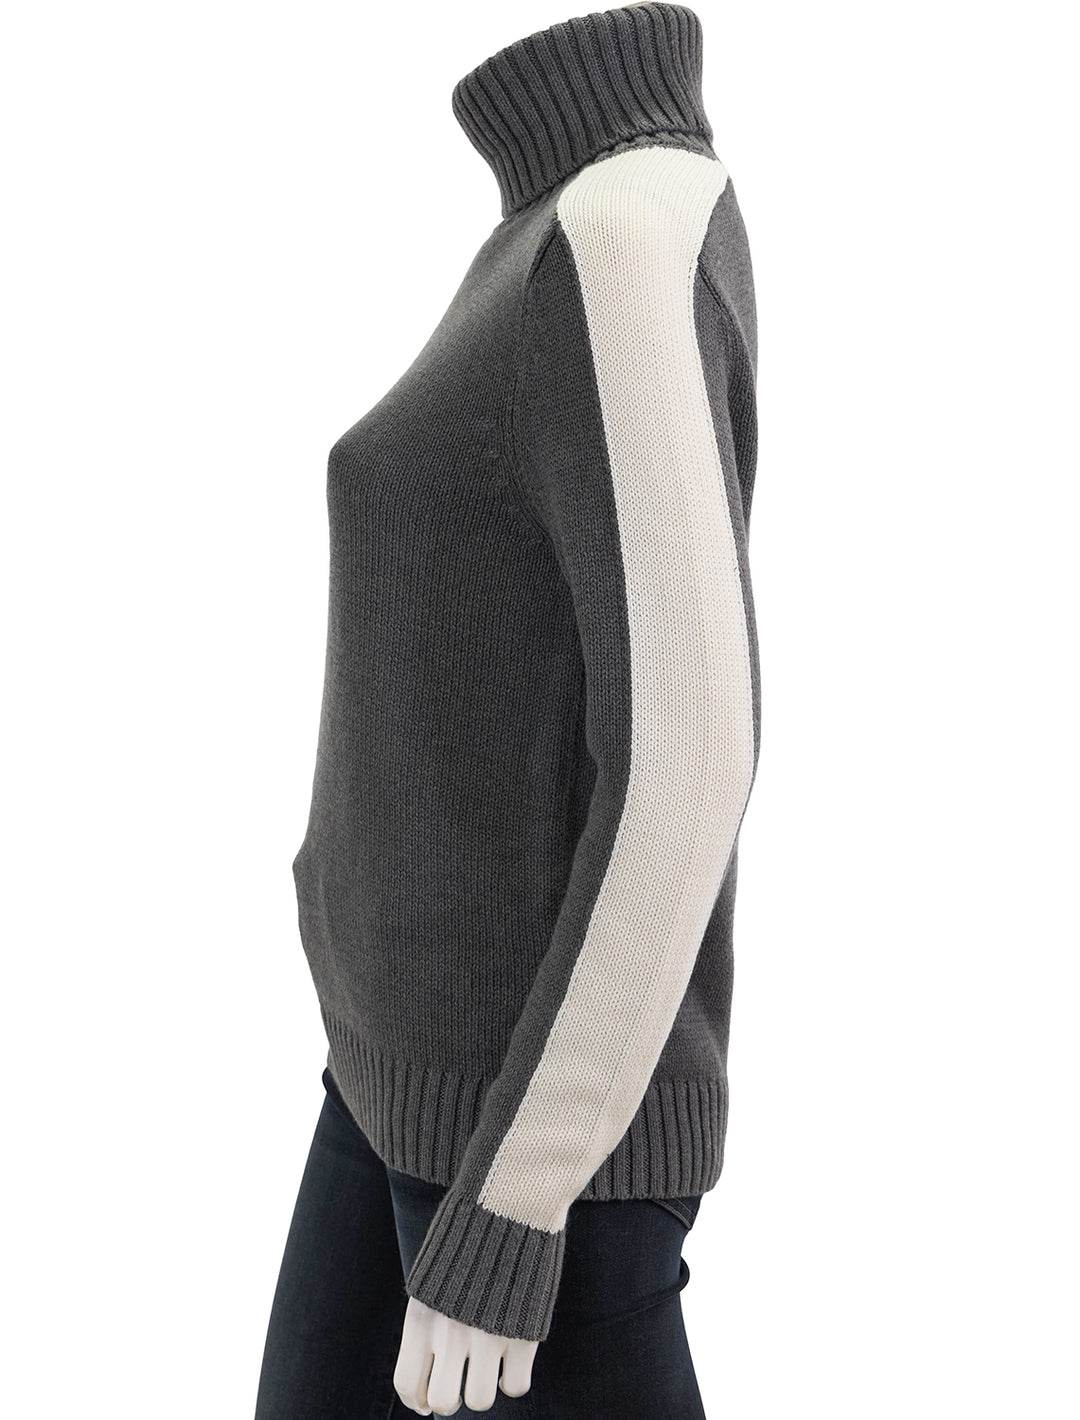 Side view of Alp N Rock's killian sweater in heather grey.